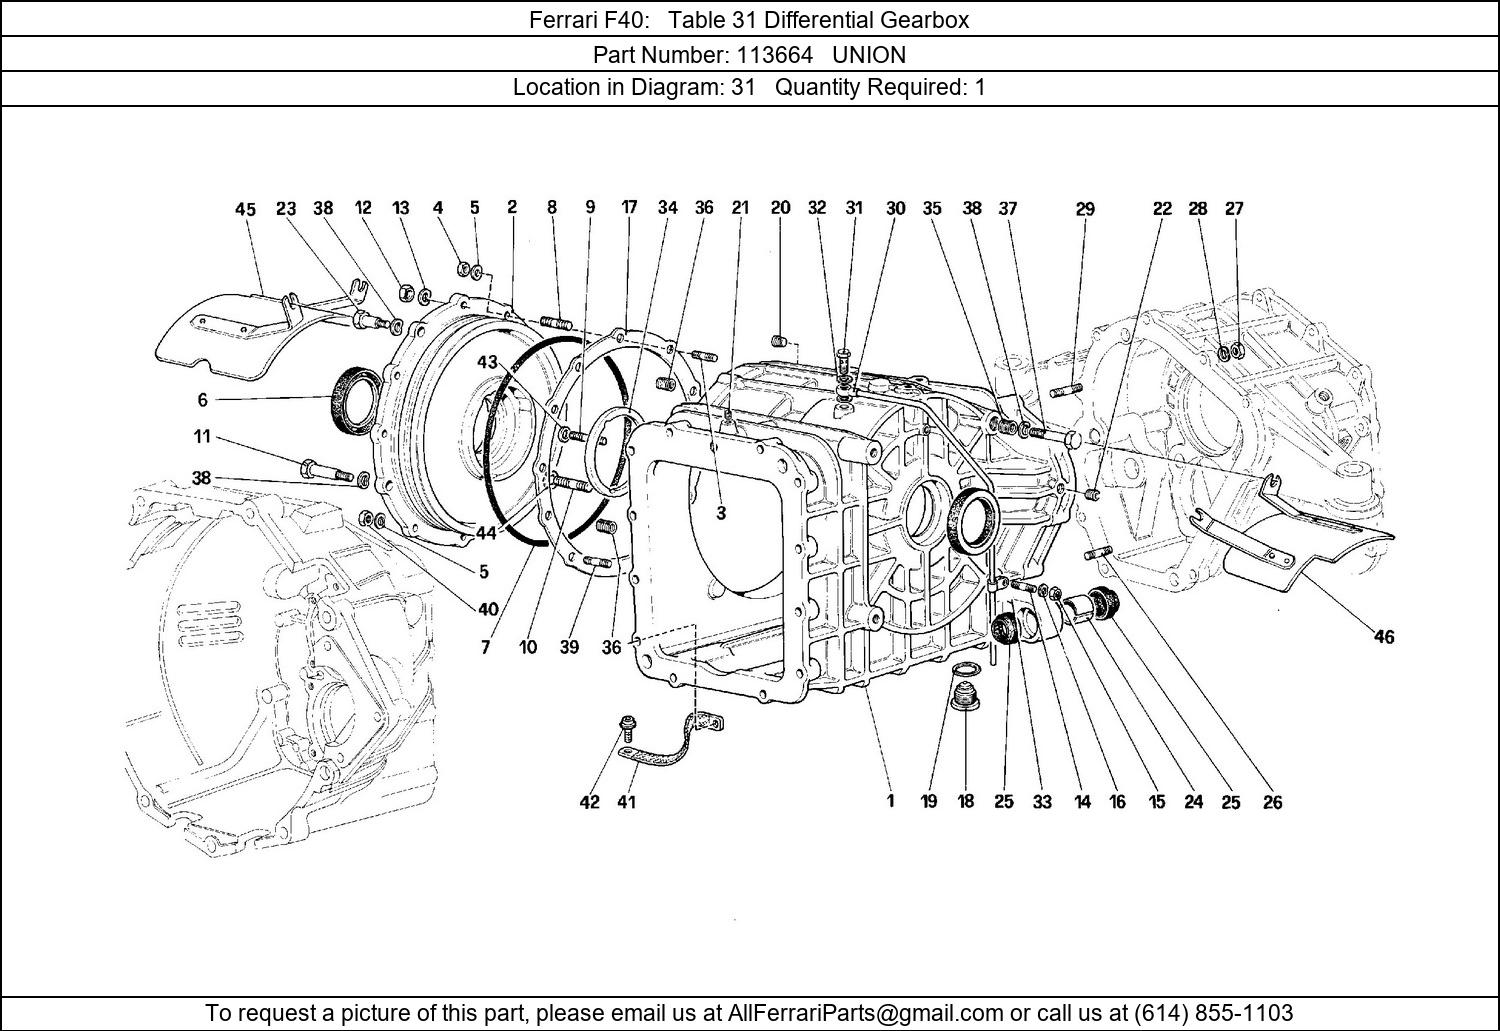 Ferrari Part 113664